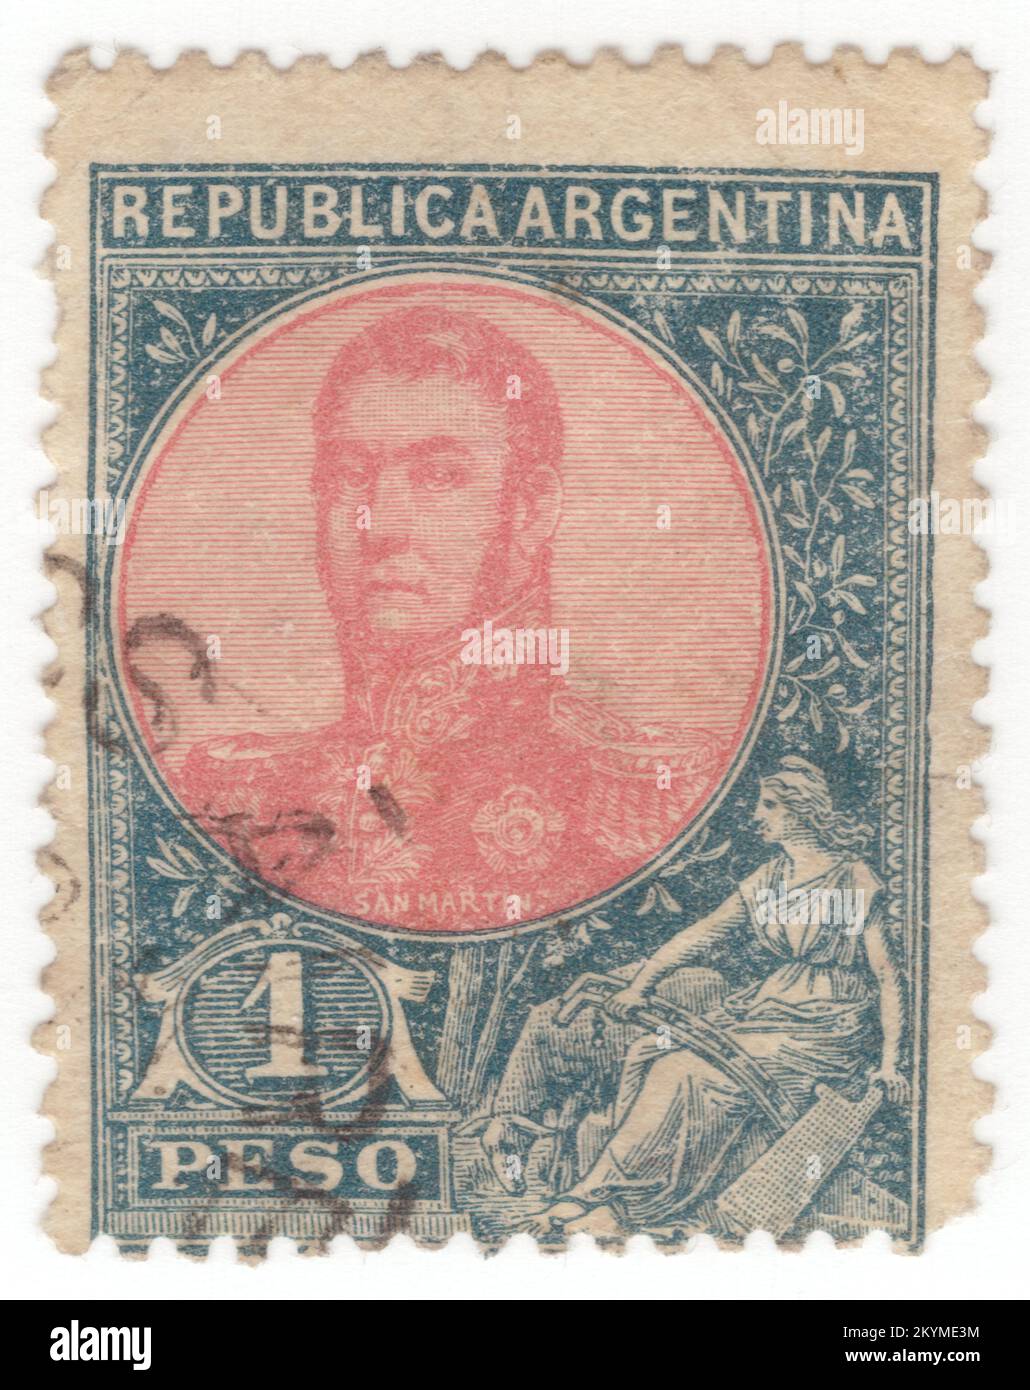 ARGENTINIEN - 1908: 1 Pesofarbenblaue und rosafarbene Briefmarke, die das Porträt von José de San Martín (Jose Francisco de San Martín y Matorras) darstellt, der als Liberator von Argentinien, Chile und Peru bekannt ist. Argentinischer General und der Hauptführer des südlichen und zentralen Teils des erfolgreichen Kampfes Südamerikas für die Unabhängigkeit vom Spanischen Reich, der als Beschützer von Peru diente. Geboren in Yapeyú, Corrientes, im modernen Argentinien, verließ er im frühen Alter von sieben Jahren das Vizekanzler der Río de la Plata, um in Málaga, Spanien, zu studieren Stockfoto